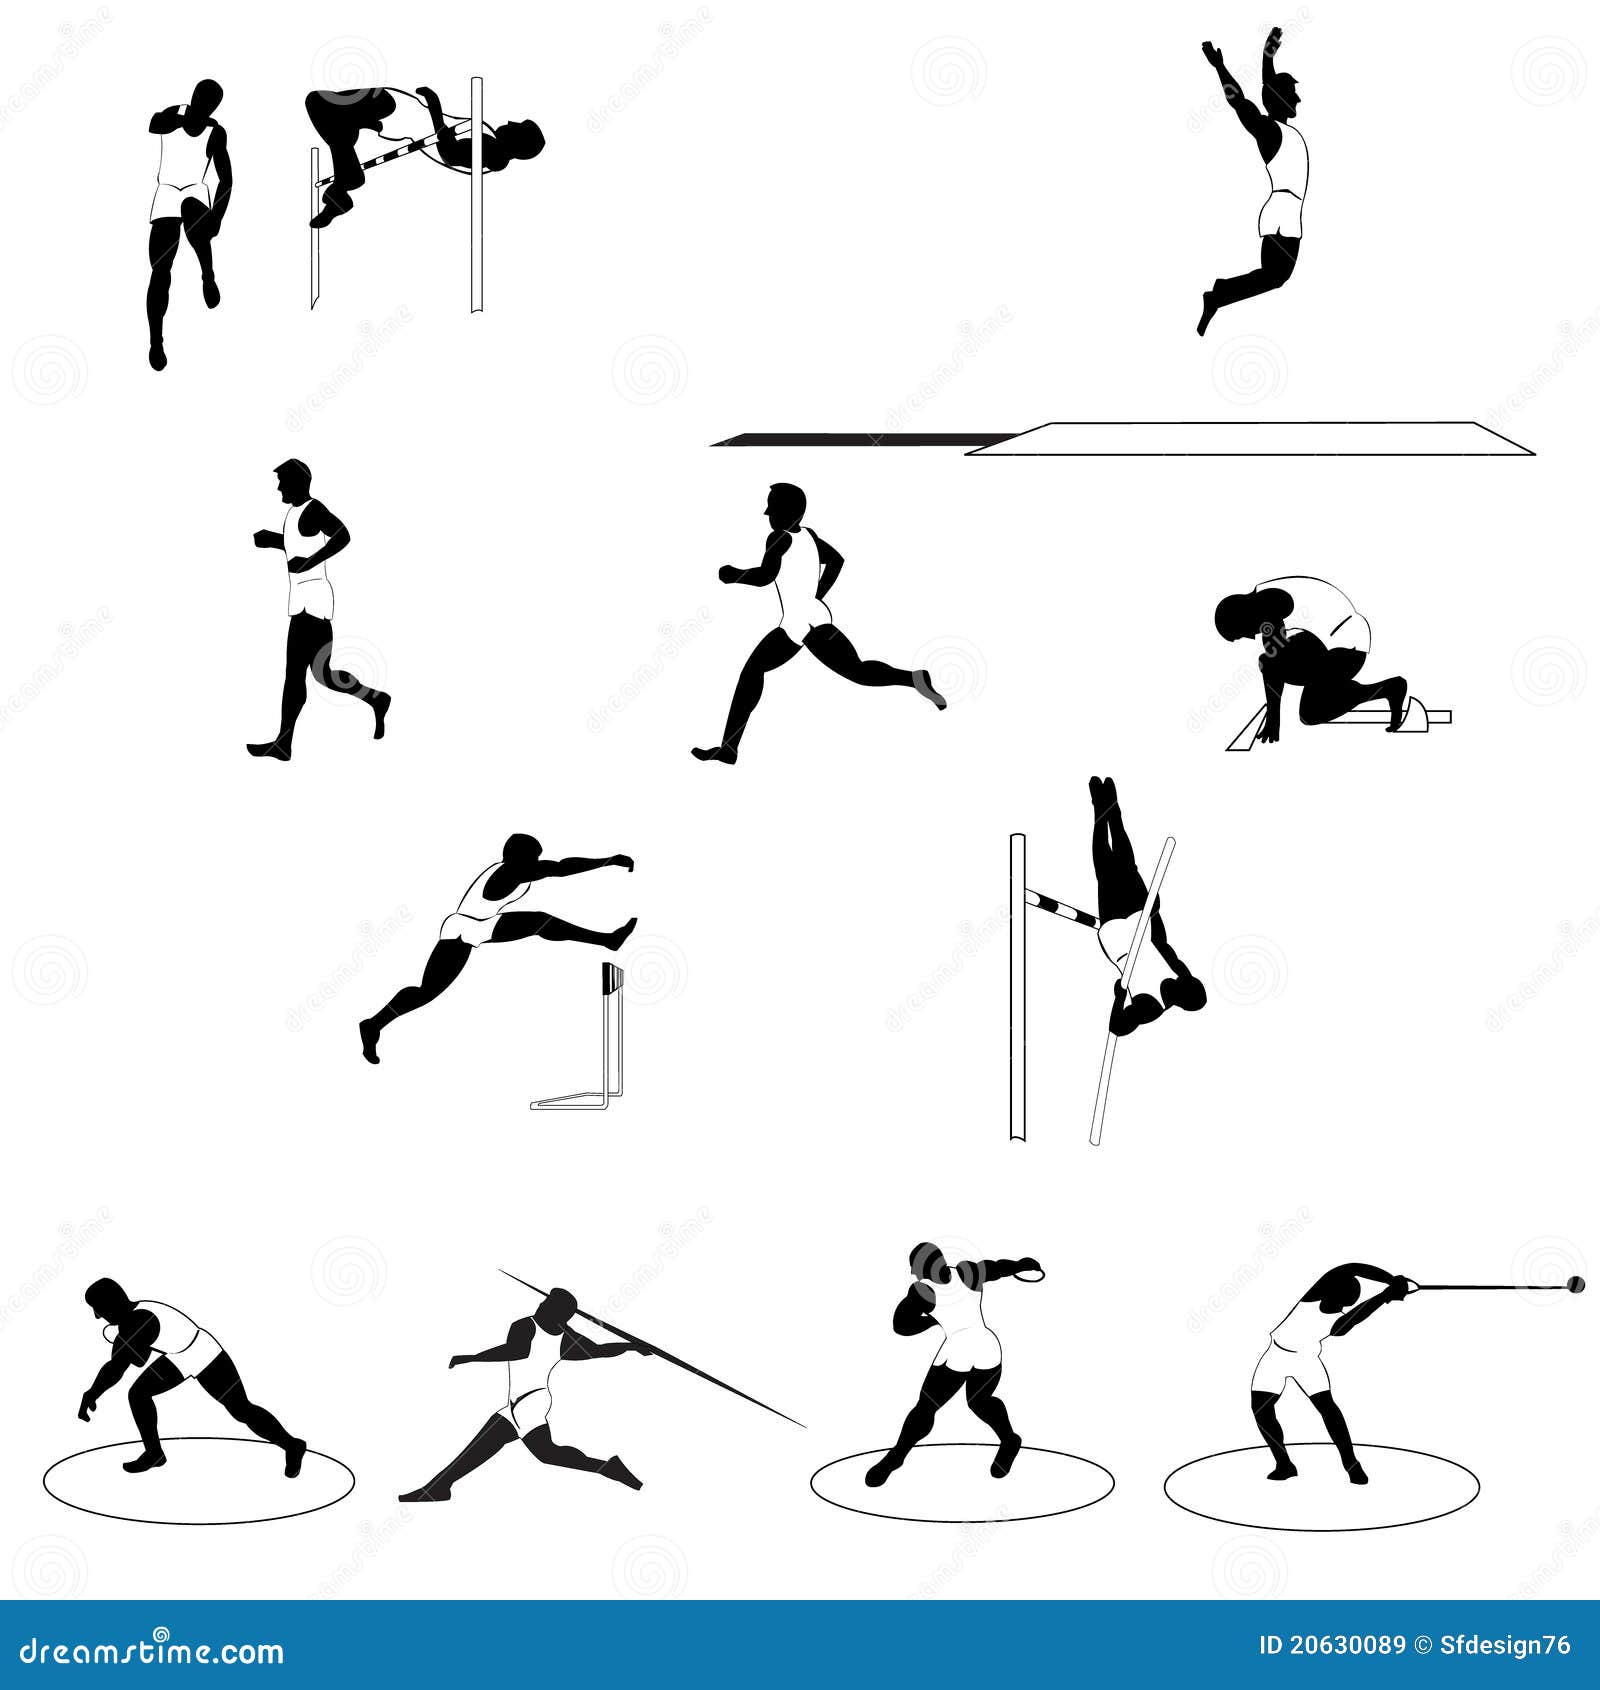 Resultado de imagen para imagenes de atletismo en blanco y negro